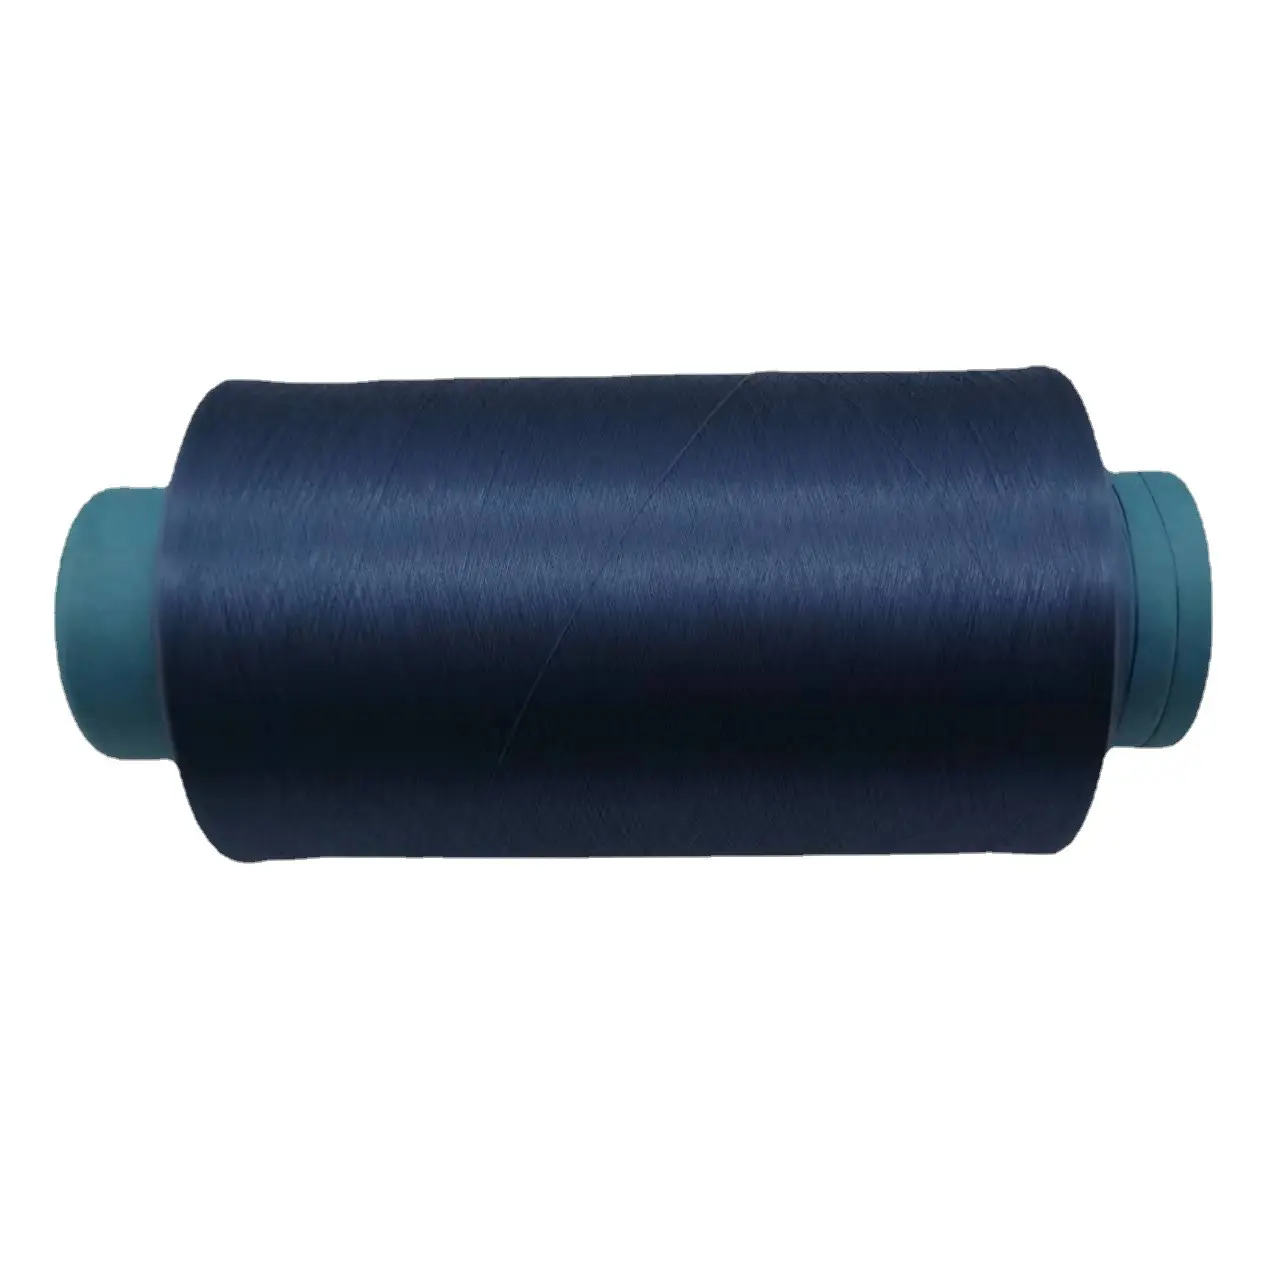 Il filato di filo di polietilene multicolore con corpo leggero in polipropilene al 100% viene utilizzato principalmente per borse e vestiti per la casa